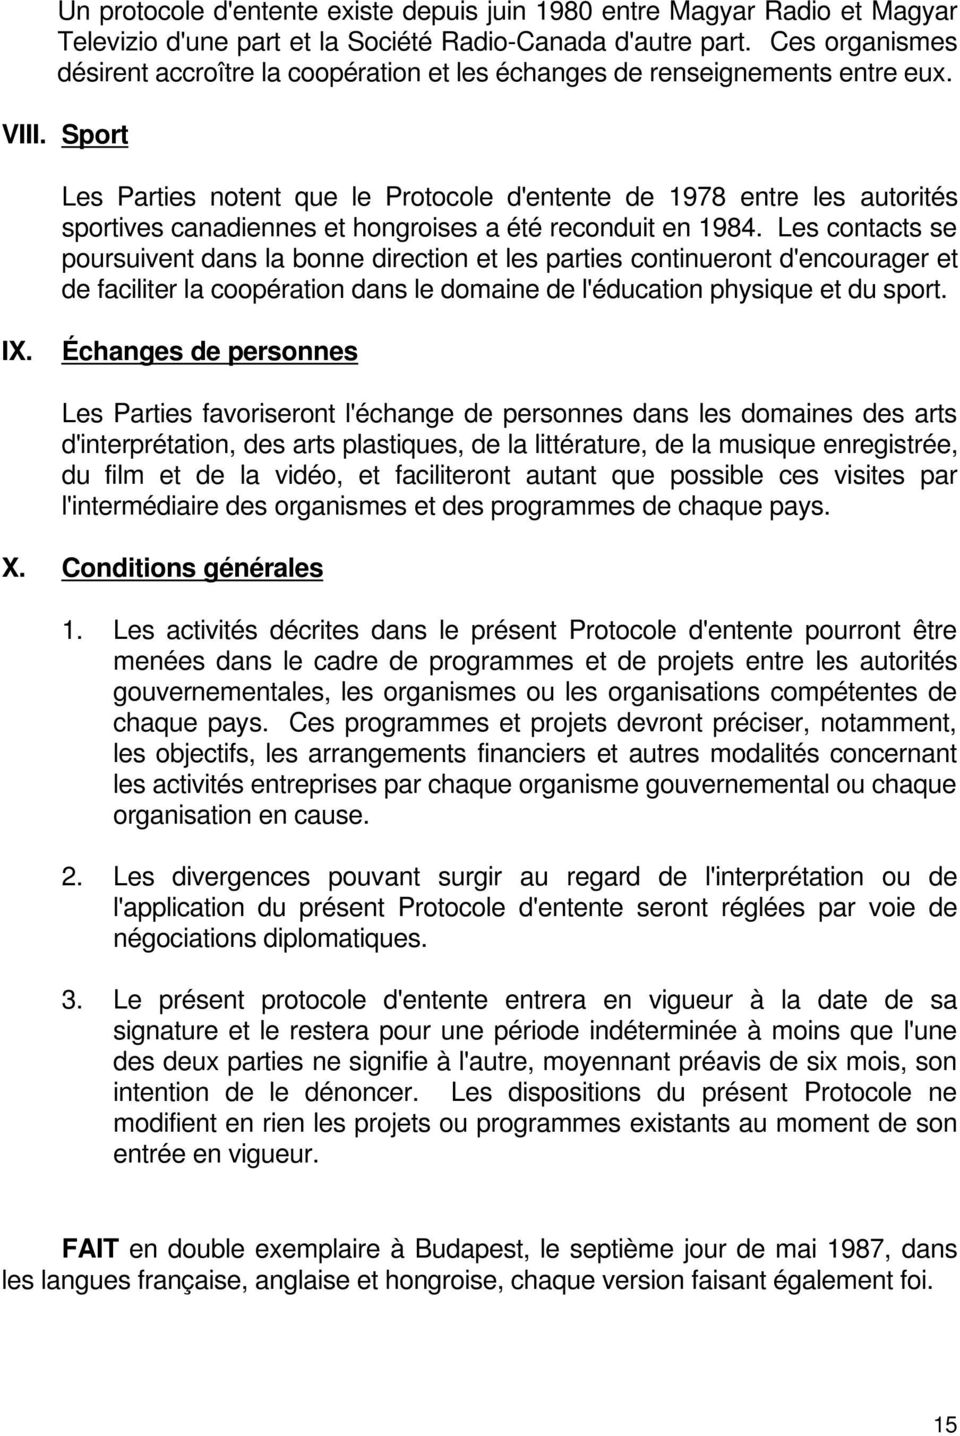 Sport Les Parties notent que le Protocole d'entente de 1978 entre les autorités sportives canadiennes et hongroises a été reconduit en 1984.